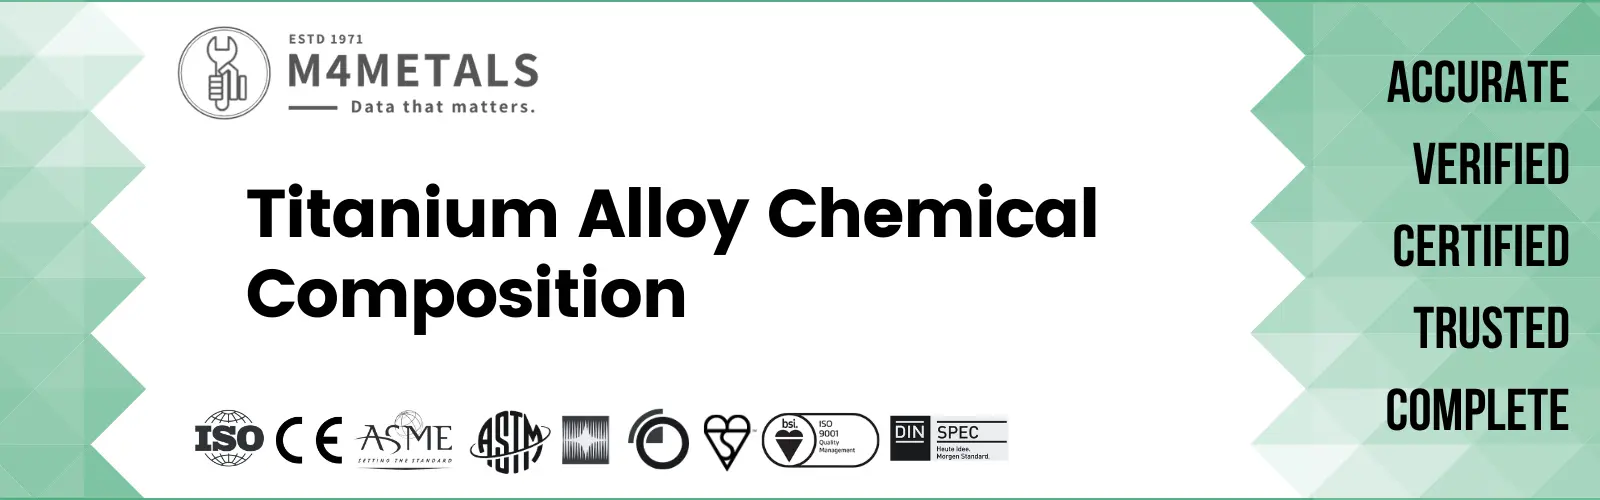 Titanium Alloy Chemical Composition